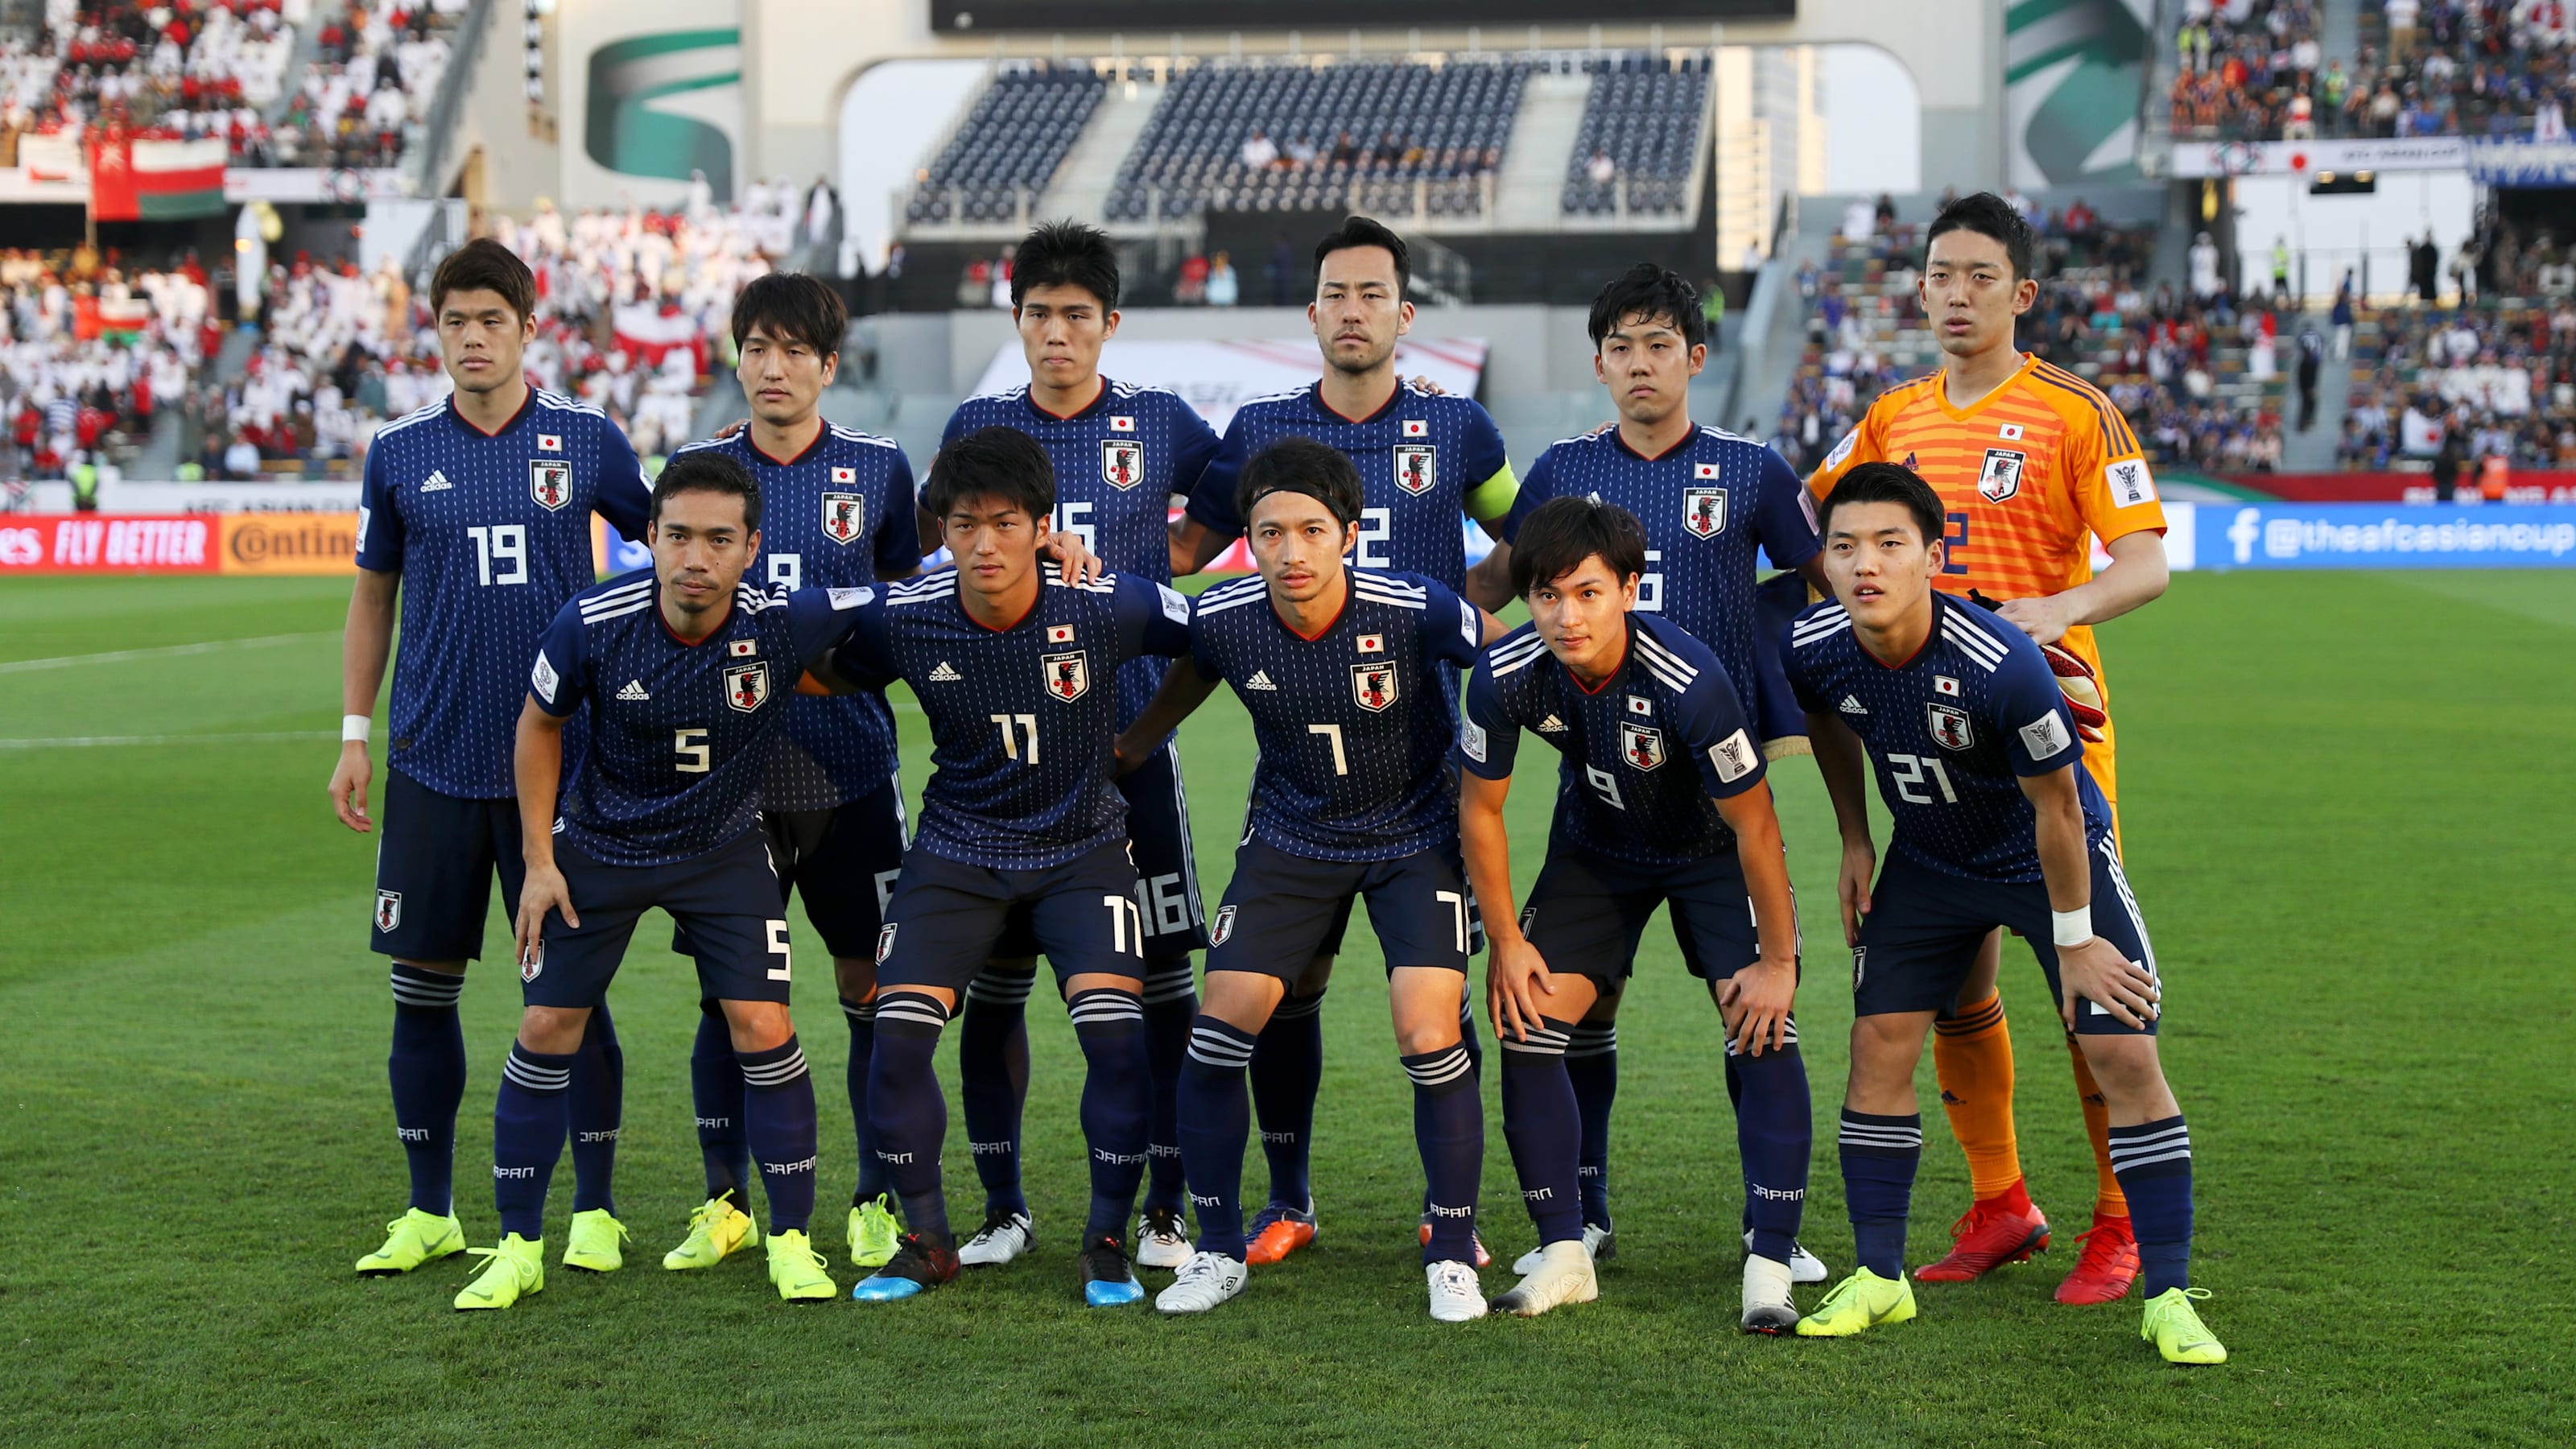 Afcアジアカップ19 勝ち上がりを決めた日本は第3節でウズベキスタンと激突 スタメンの大幅入れ替えも